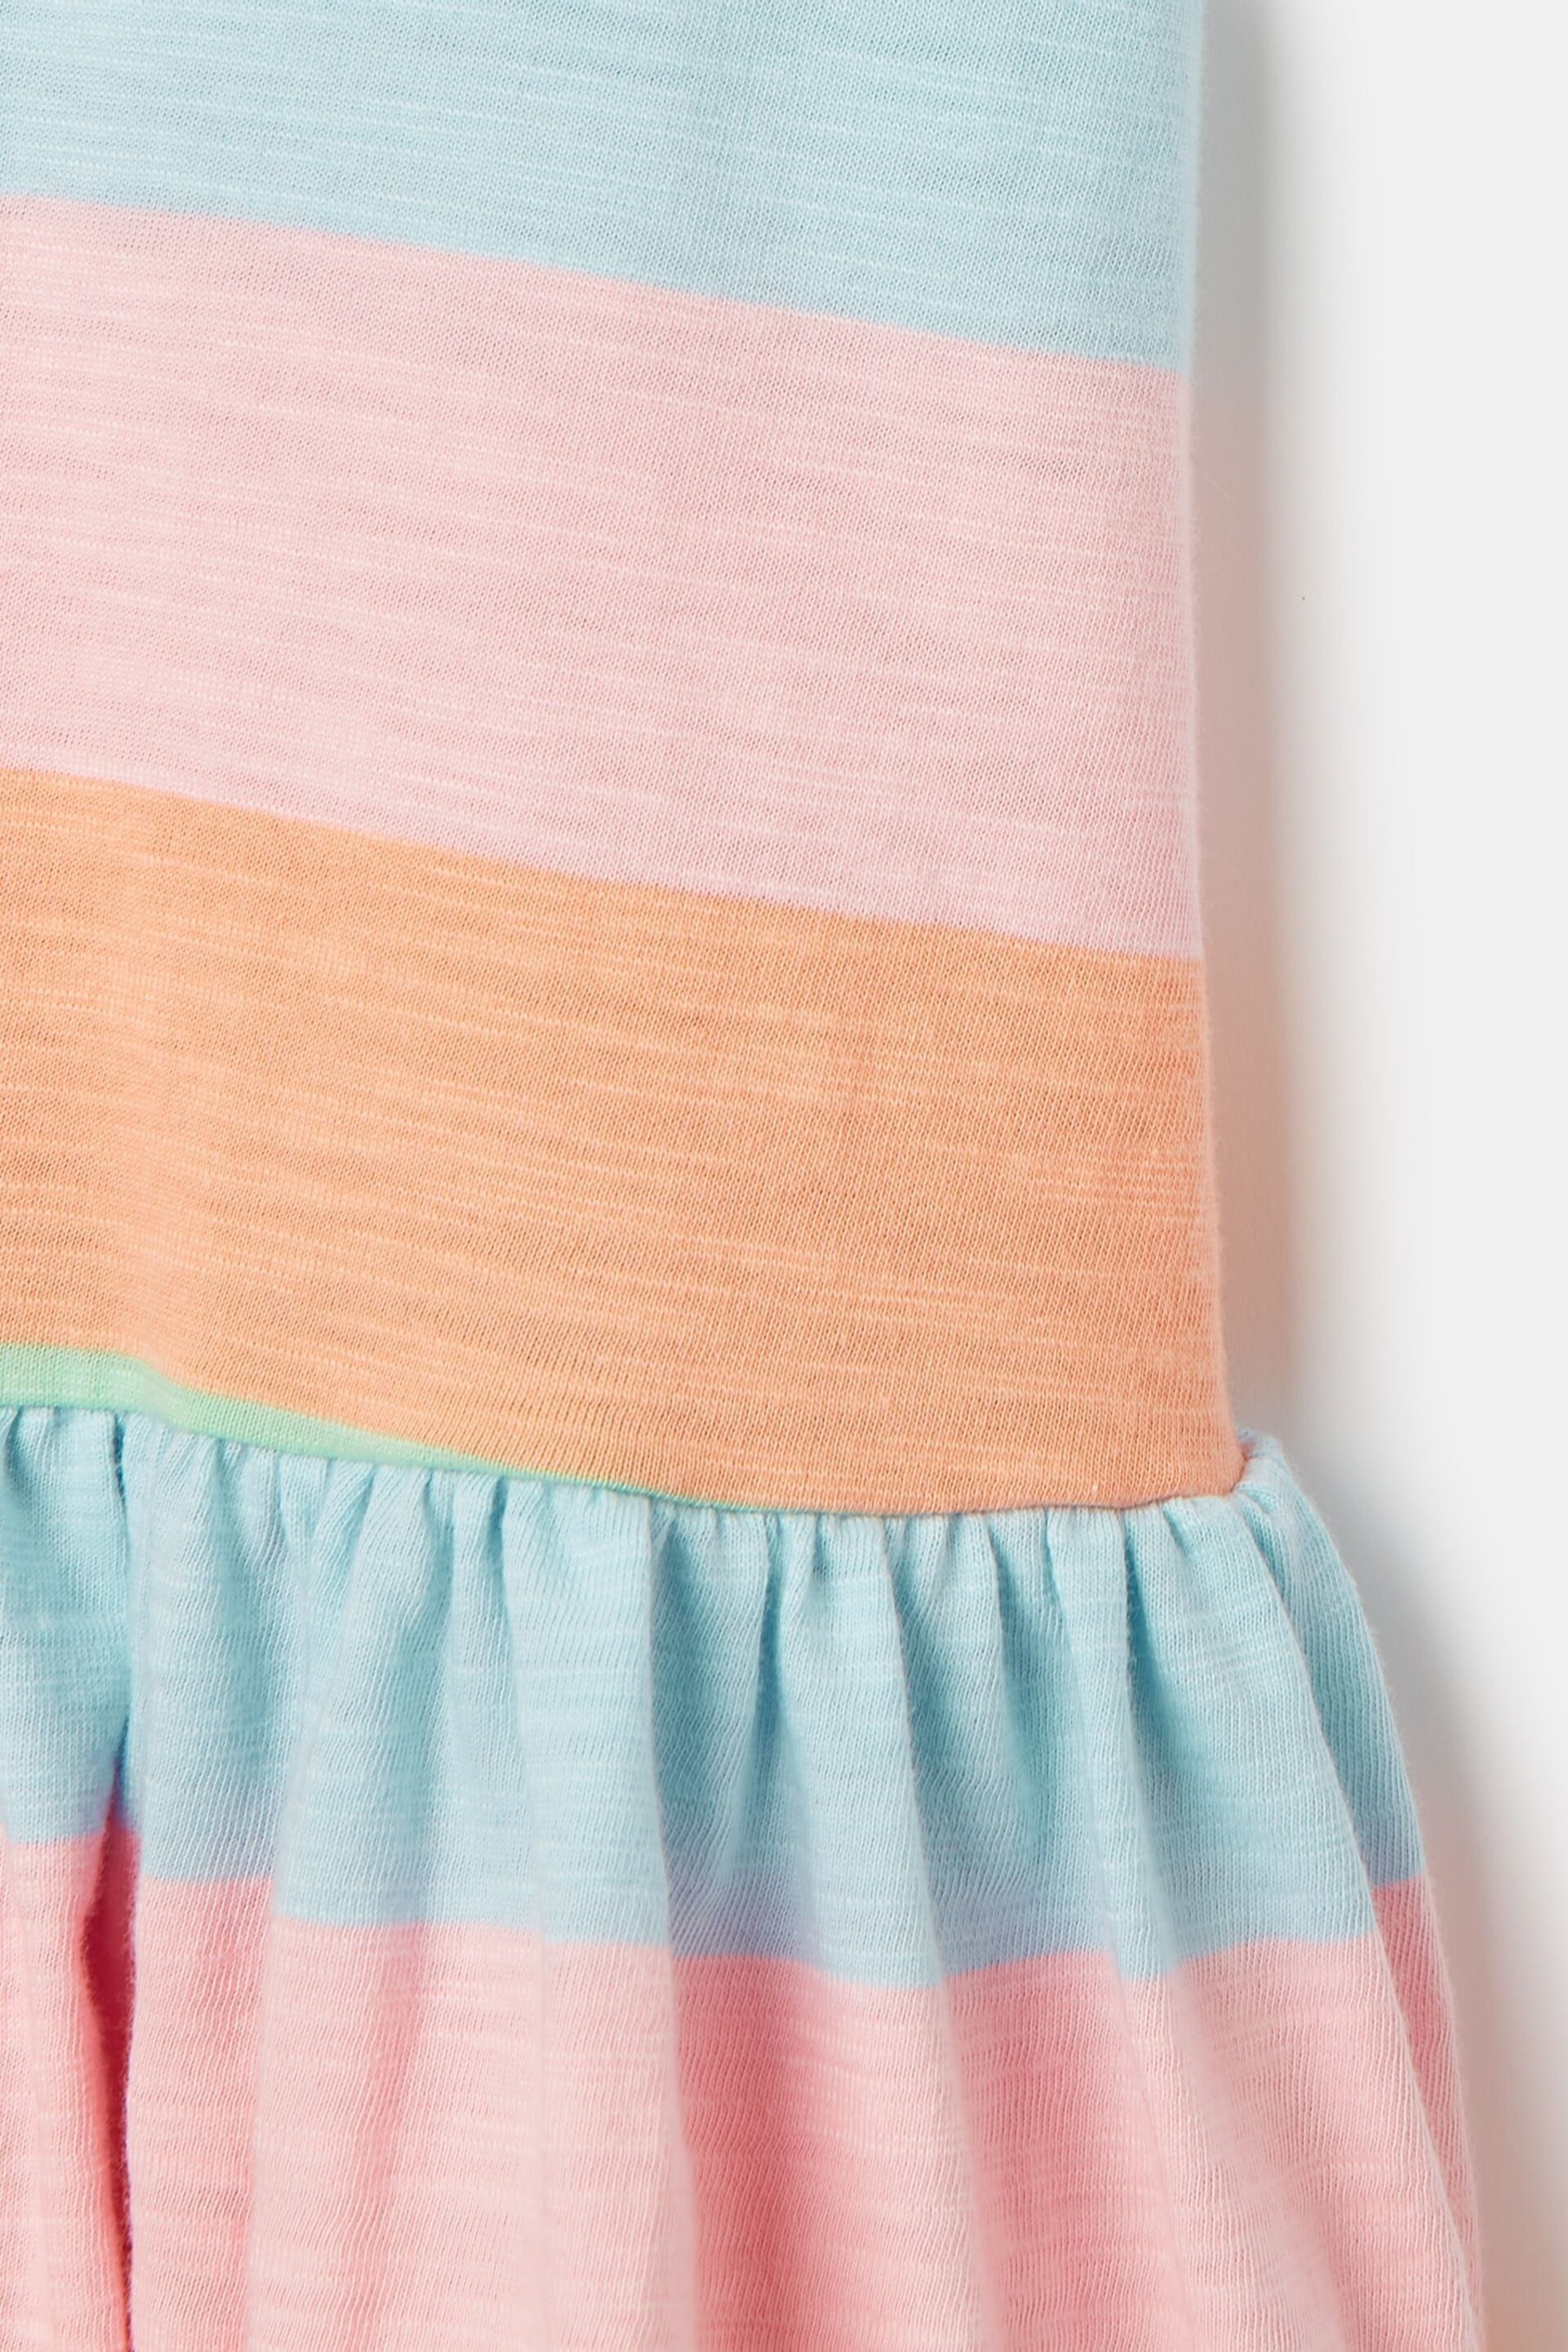 Joules Skipwell Multi Stripe Cotton Sleeveless Dress - Image 4 of 5